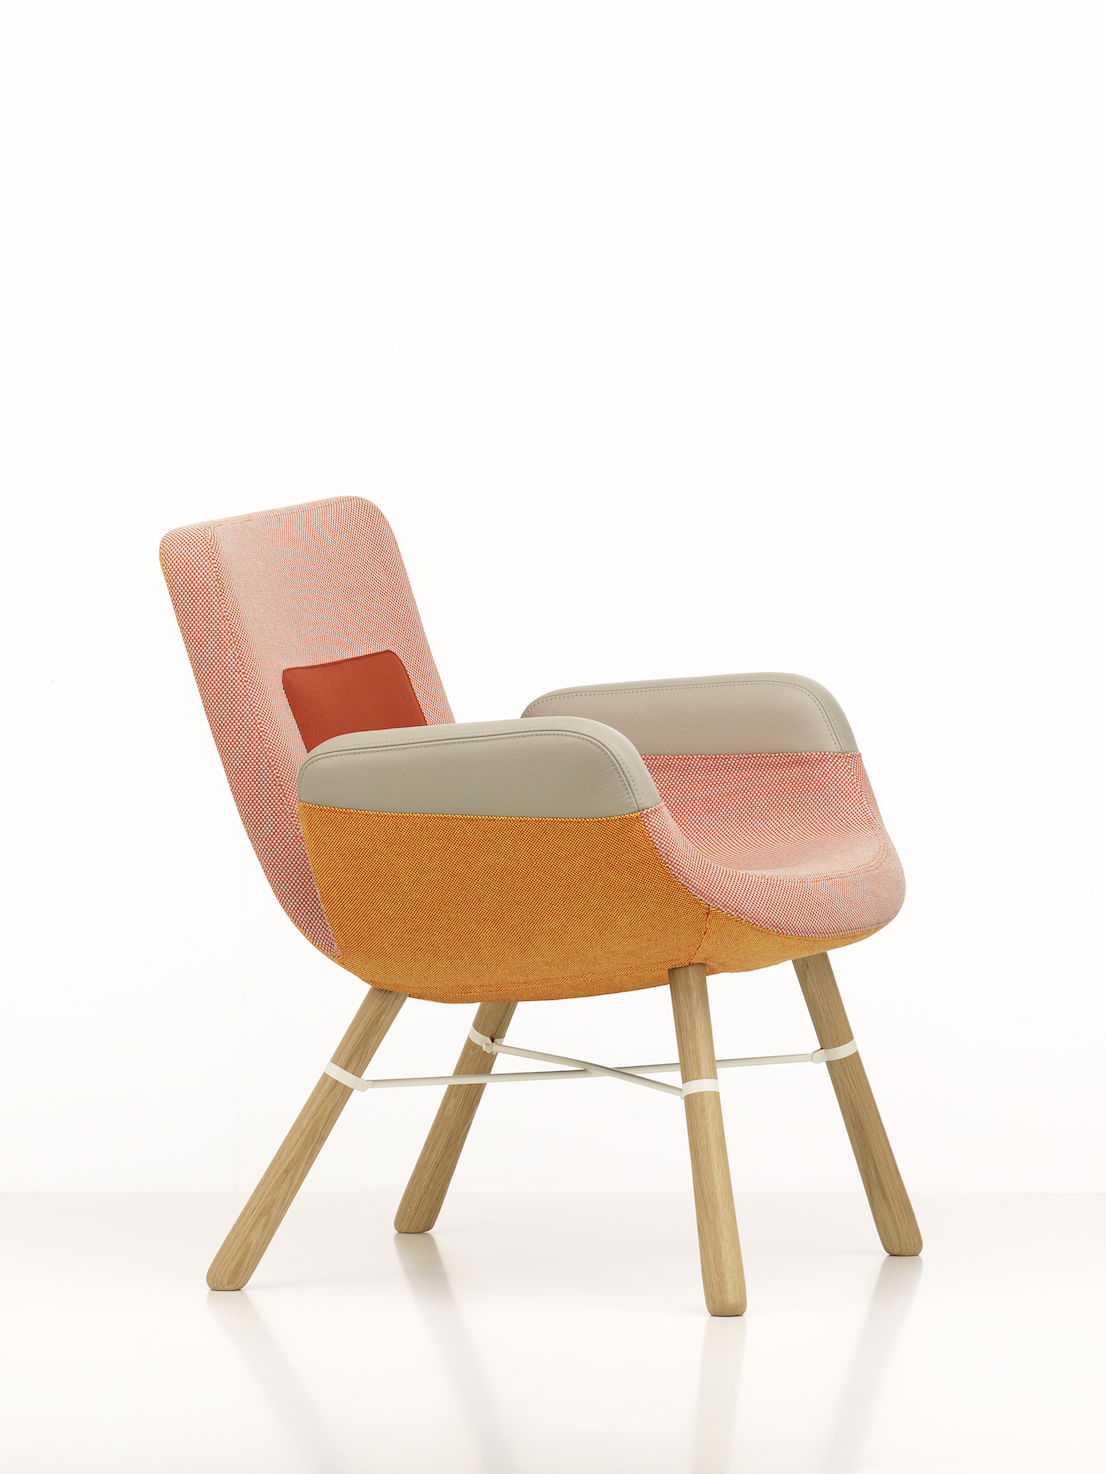 East River Chair, design di Hella Jongerius per Vitra